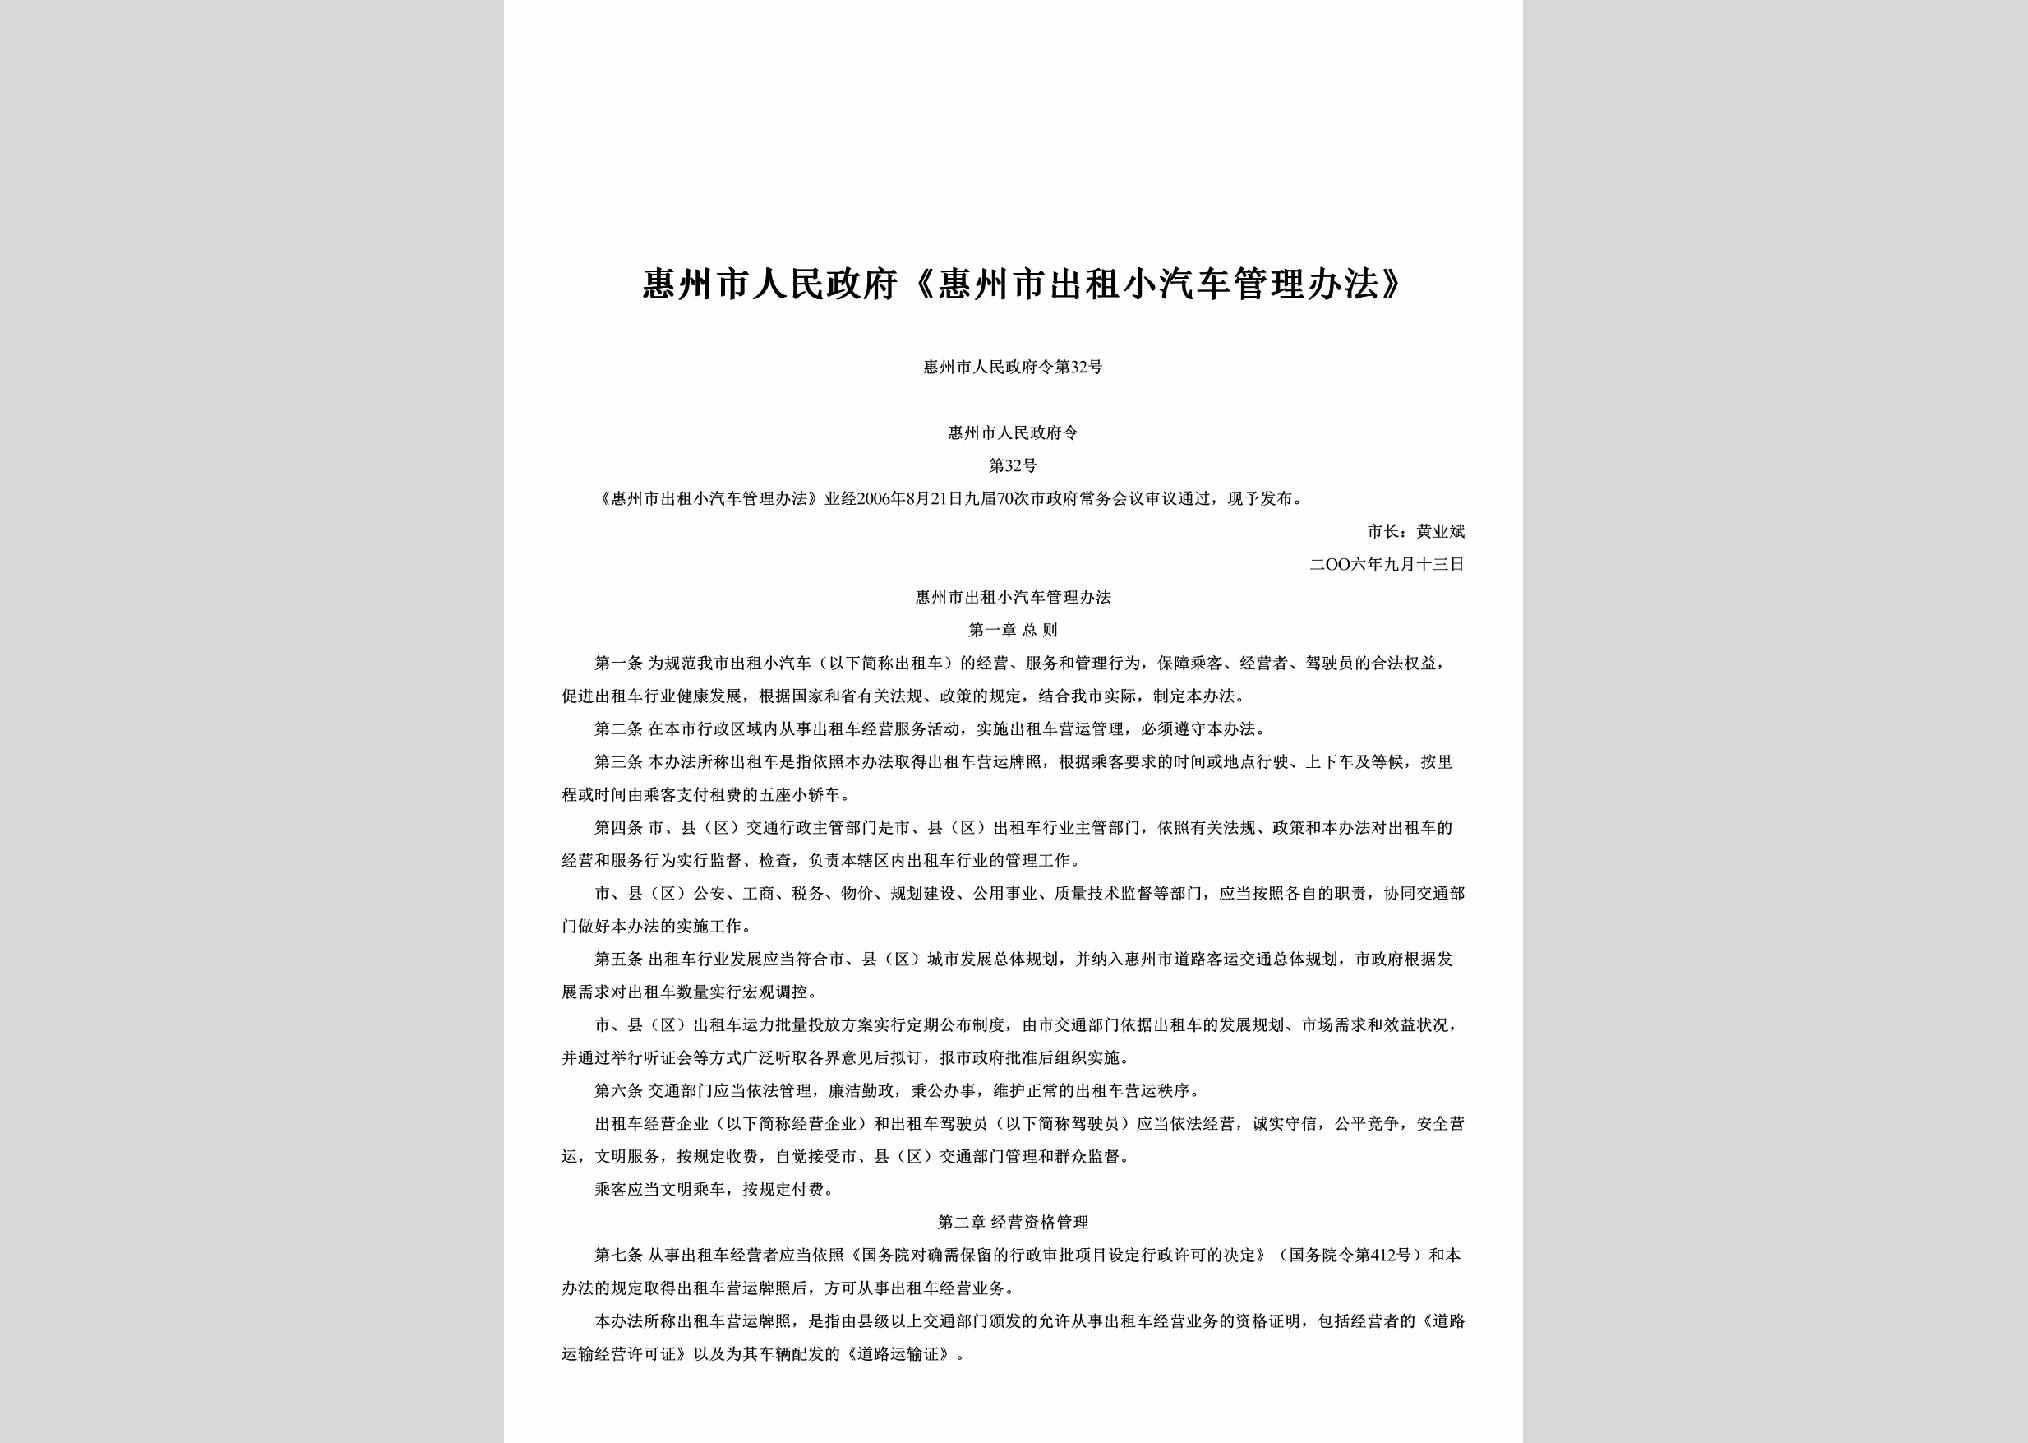 惠州市人民政府令第32号：《惠州市出租小汽车管理办法》